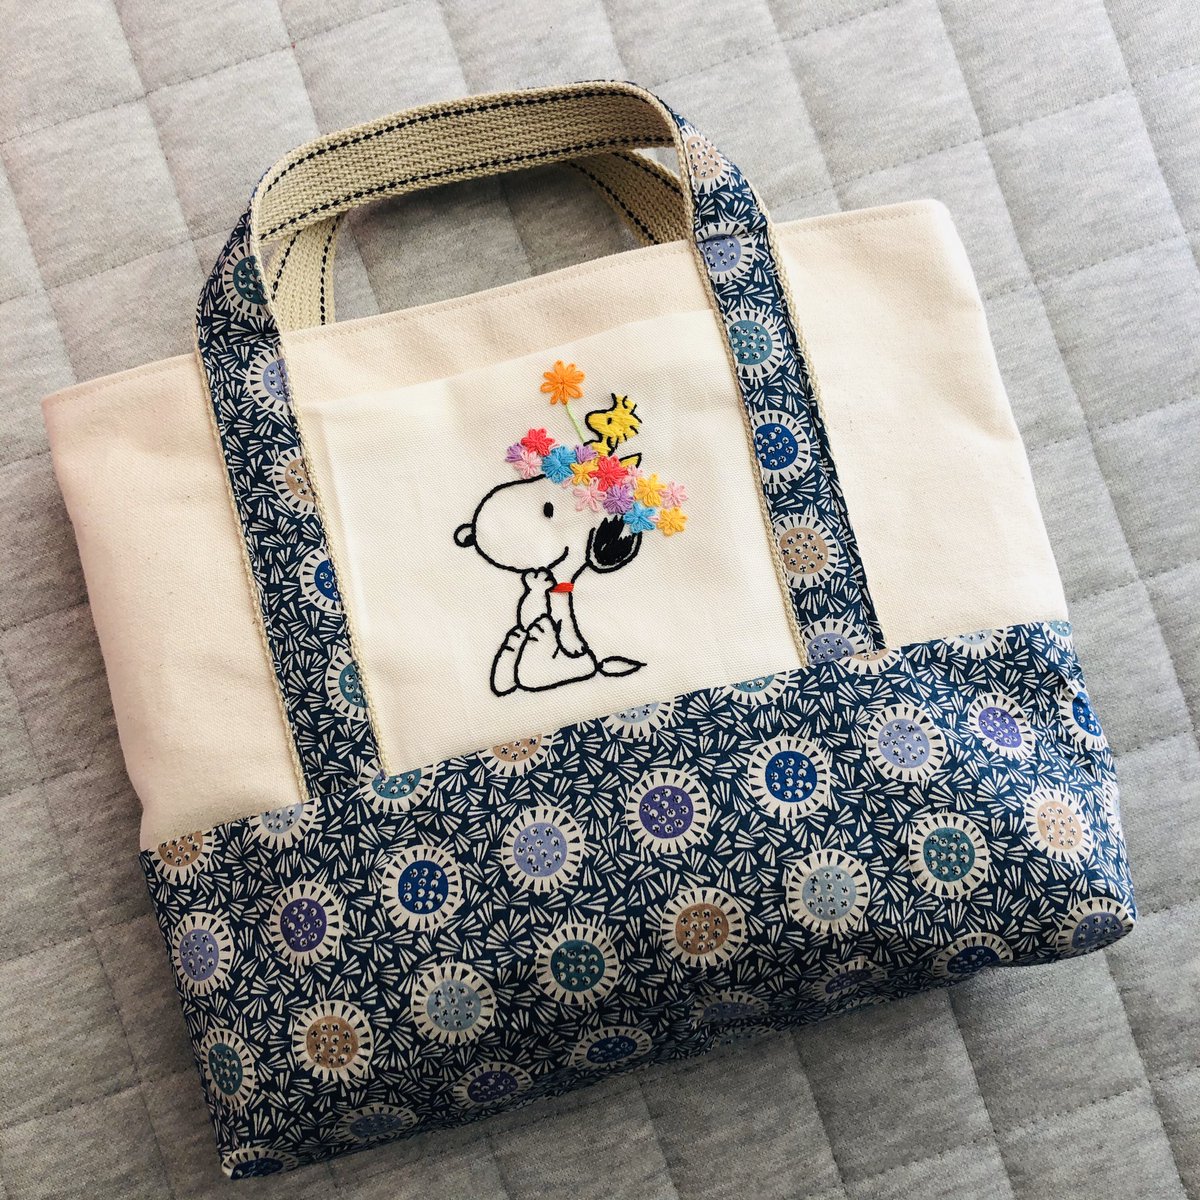 Muni 1028 على تويتر リバティ 帆布のトートバッグを作りました 喜んでくれますように スヌーピー 手作り ハンドメイド Snoopy トートバッグ